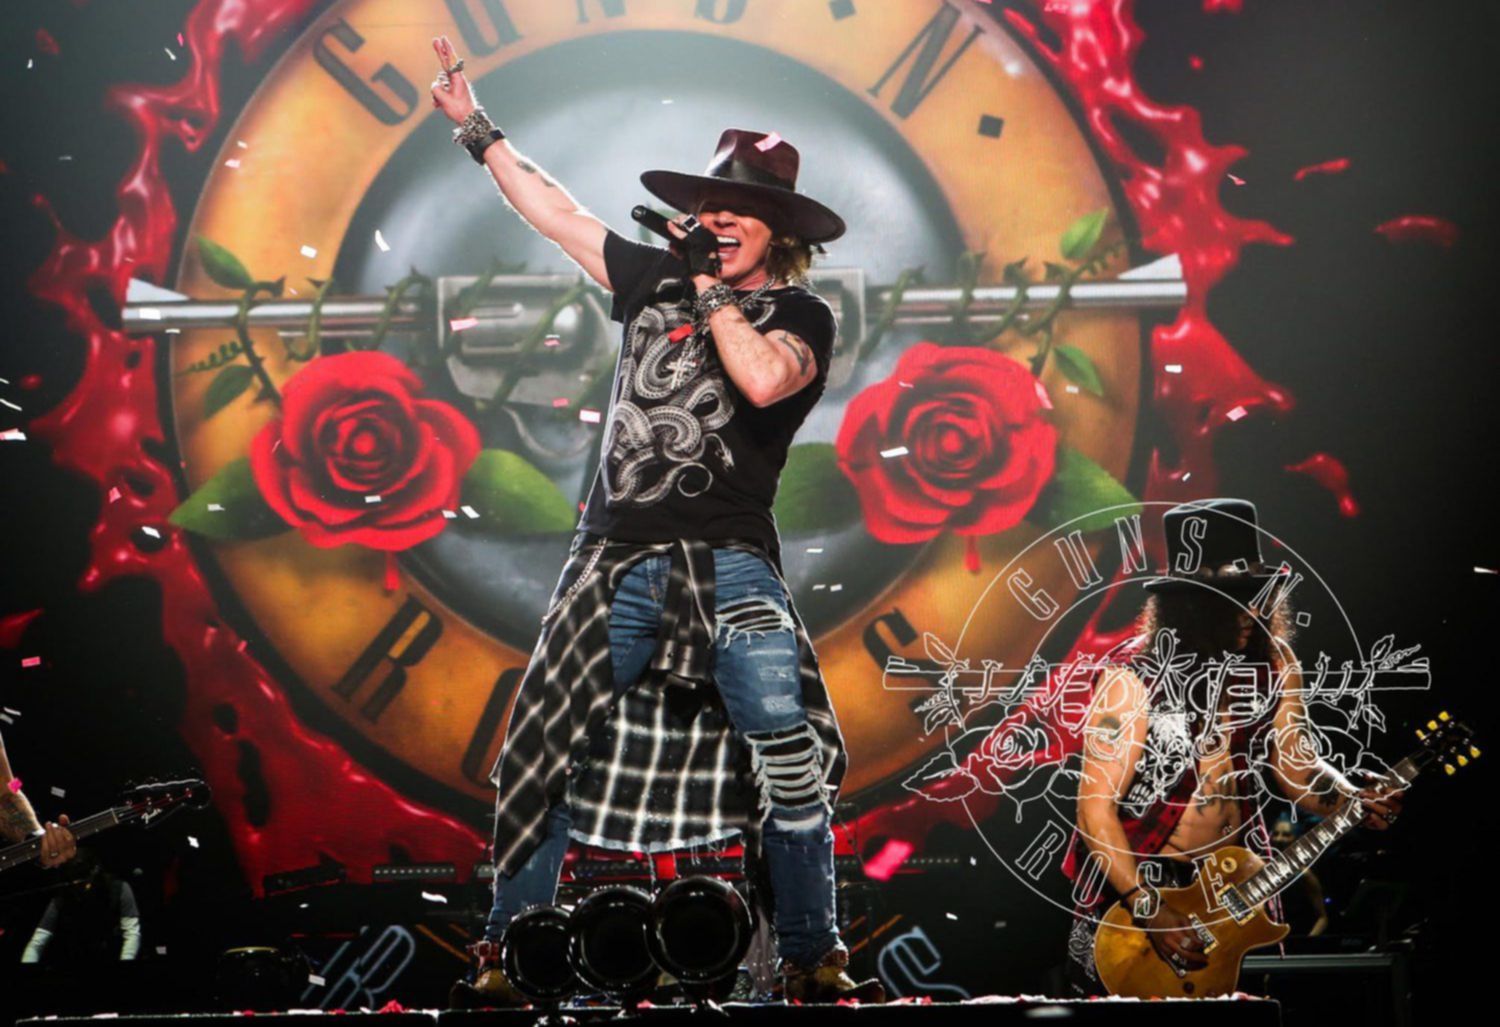 GN‘R, heiß: So lief der Auftritt von Guns N‘ Roses in München